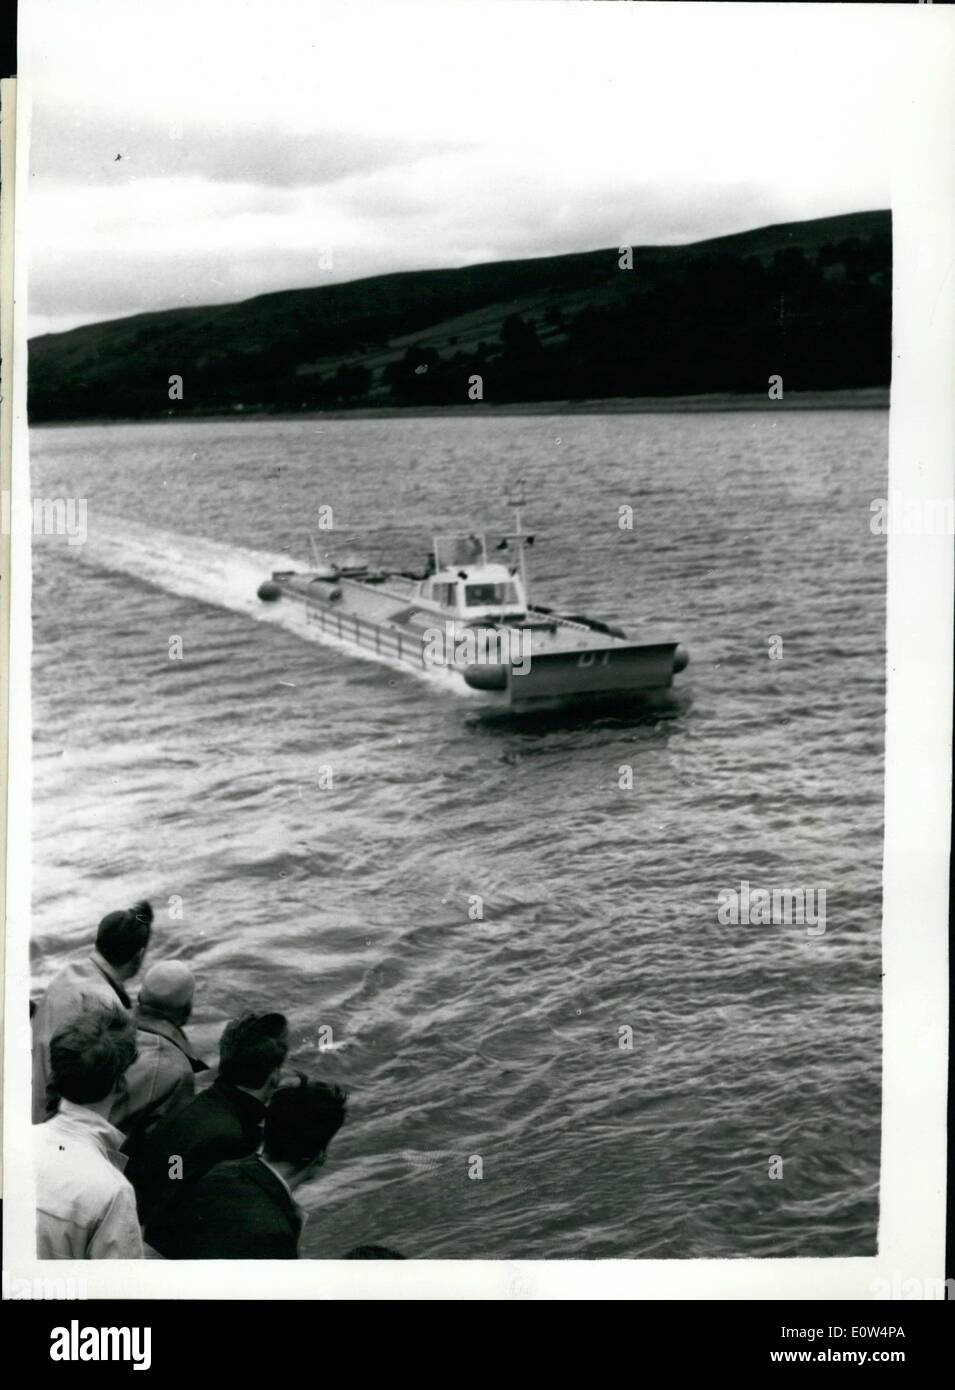 Giugno 06, 1961 - Gran Bretagna il primo ''Hovership'' - fa il suo debutto pubblico, è solo che galleggia nella parte superiore dell'acqua..70 Passeggeri; Gran Bretagna il primo ''Hovership'' - costruito da William Denny un fratelli Ltd., in collaborazione con lo sviluppo di Hovercraft Ltd., ha fatto il suo primo debutto pubblico ieri - su Gareloch, vicino a Dumbarton. Il 4 1/2 ton macchina è la prima fase di un intenso programma di ricerca intrapresi per produrre un passeggero che trasportano hoverferry b y il prossimo anno Foto Stock